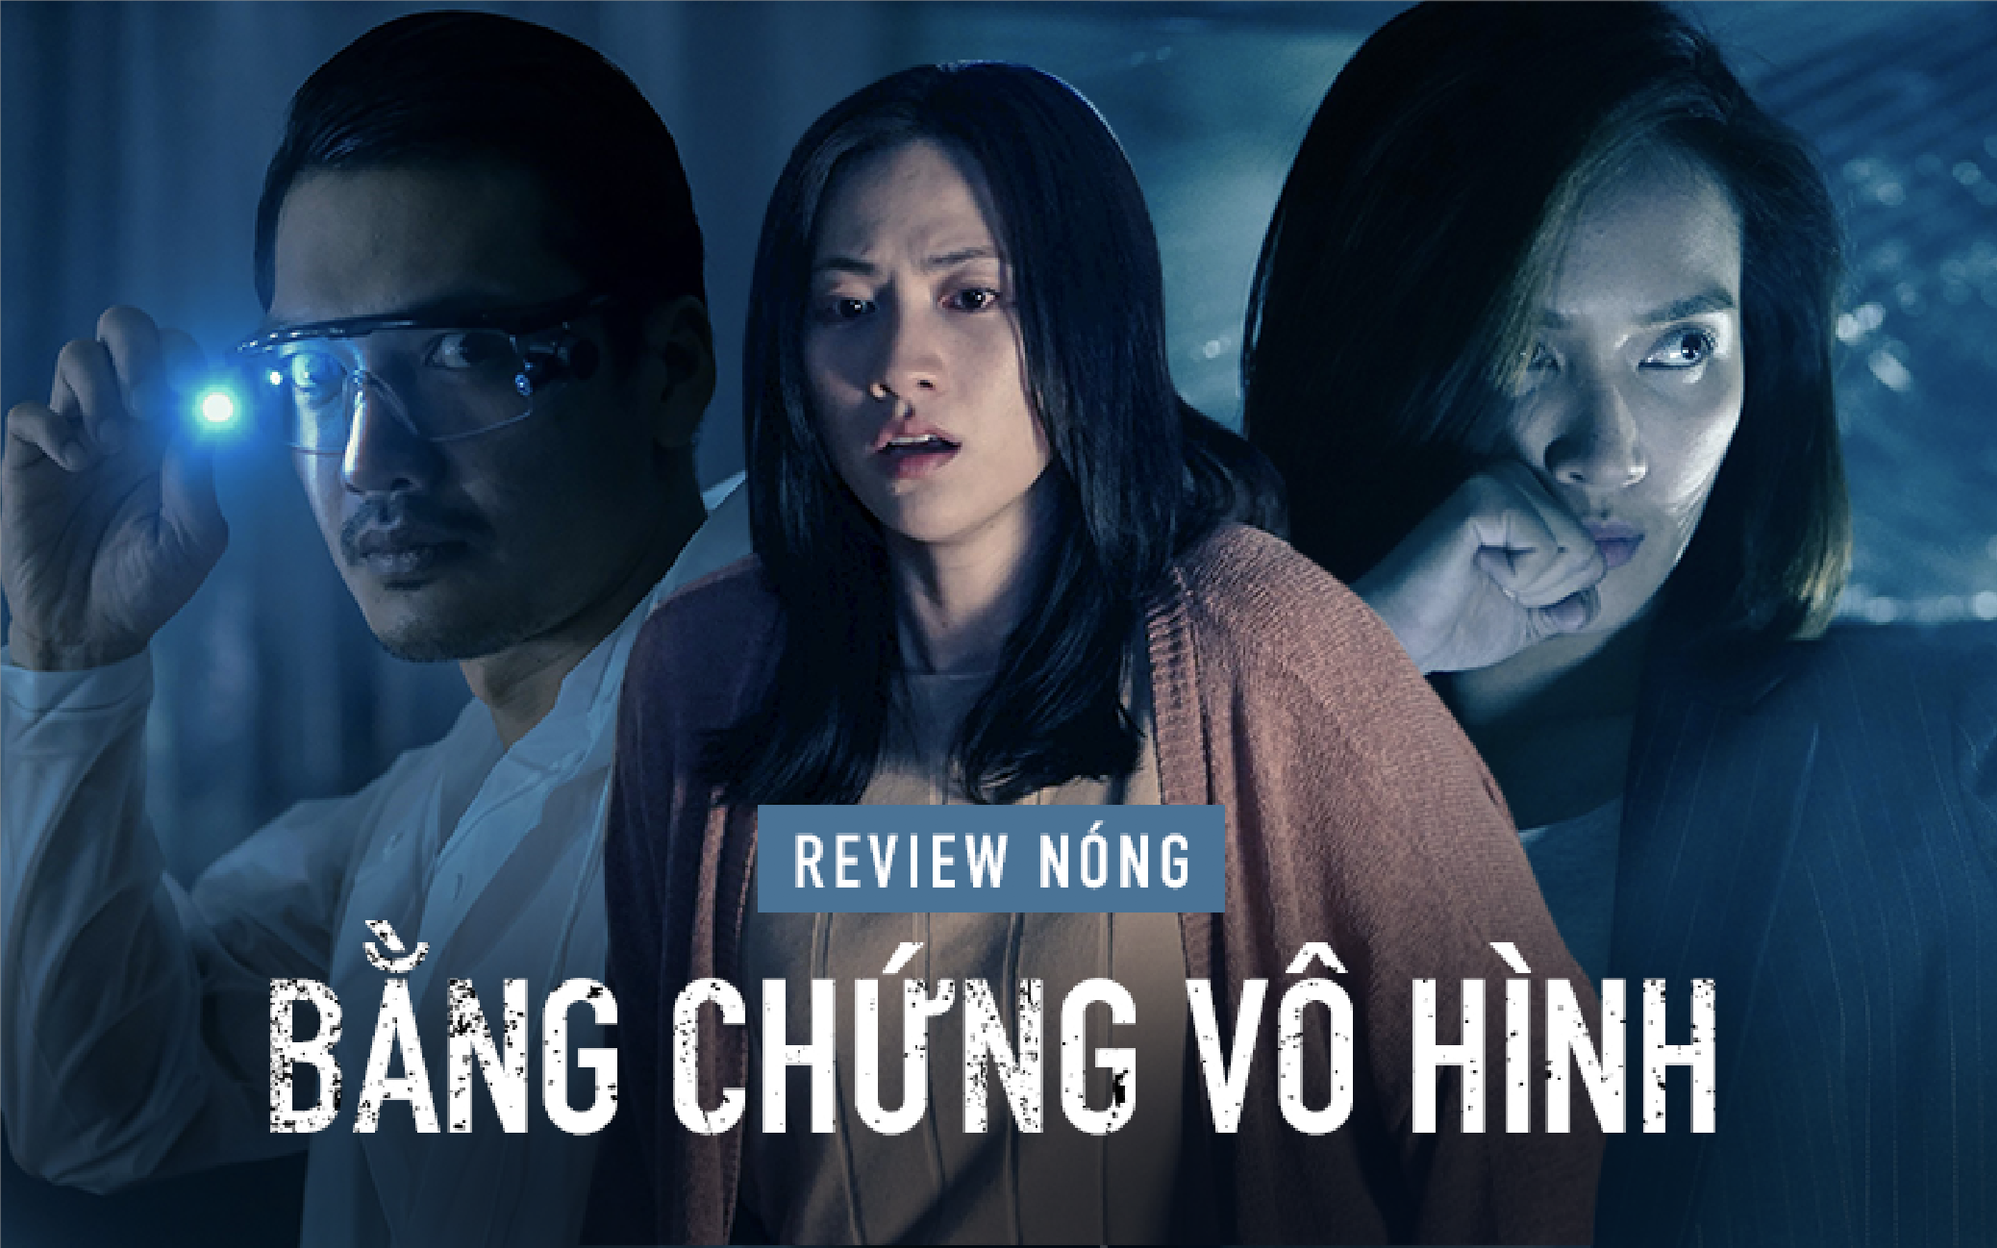 Thở dốc từng cơn với tên sát nhân biến thái qua ứng dụng hẹn hò, Bằng Chứng Vô Hình là phim Việt đáng xem nhất lúc này!